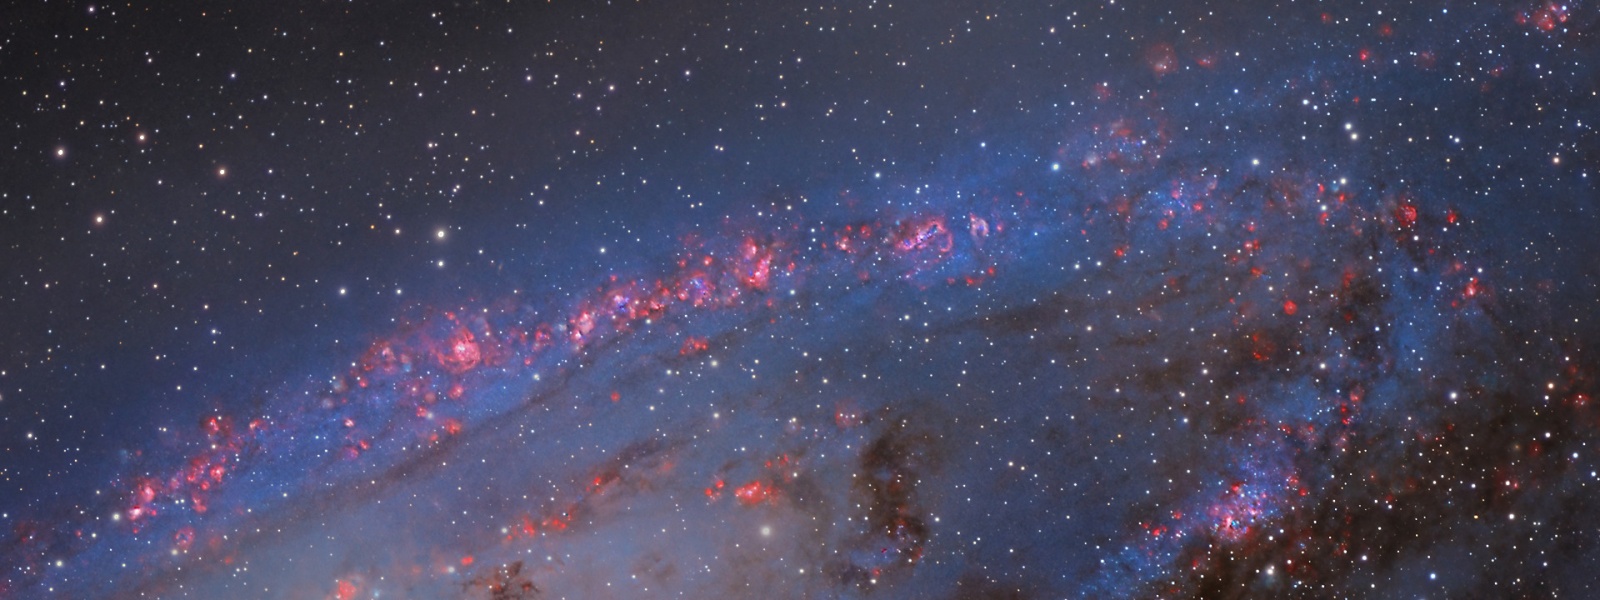 Области звёздообразования в галактике Андромеды (подсвечены красным цветом ионизированного водорода — эти гигантские водородные туманности подобны широкоизвестной туманности Ориона). Автор астрофотоснимка Yann Sainty  